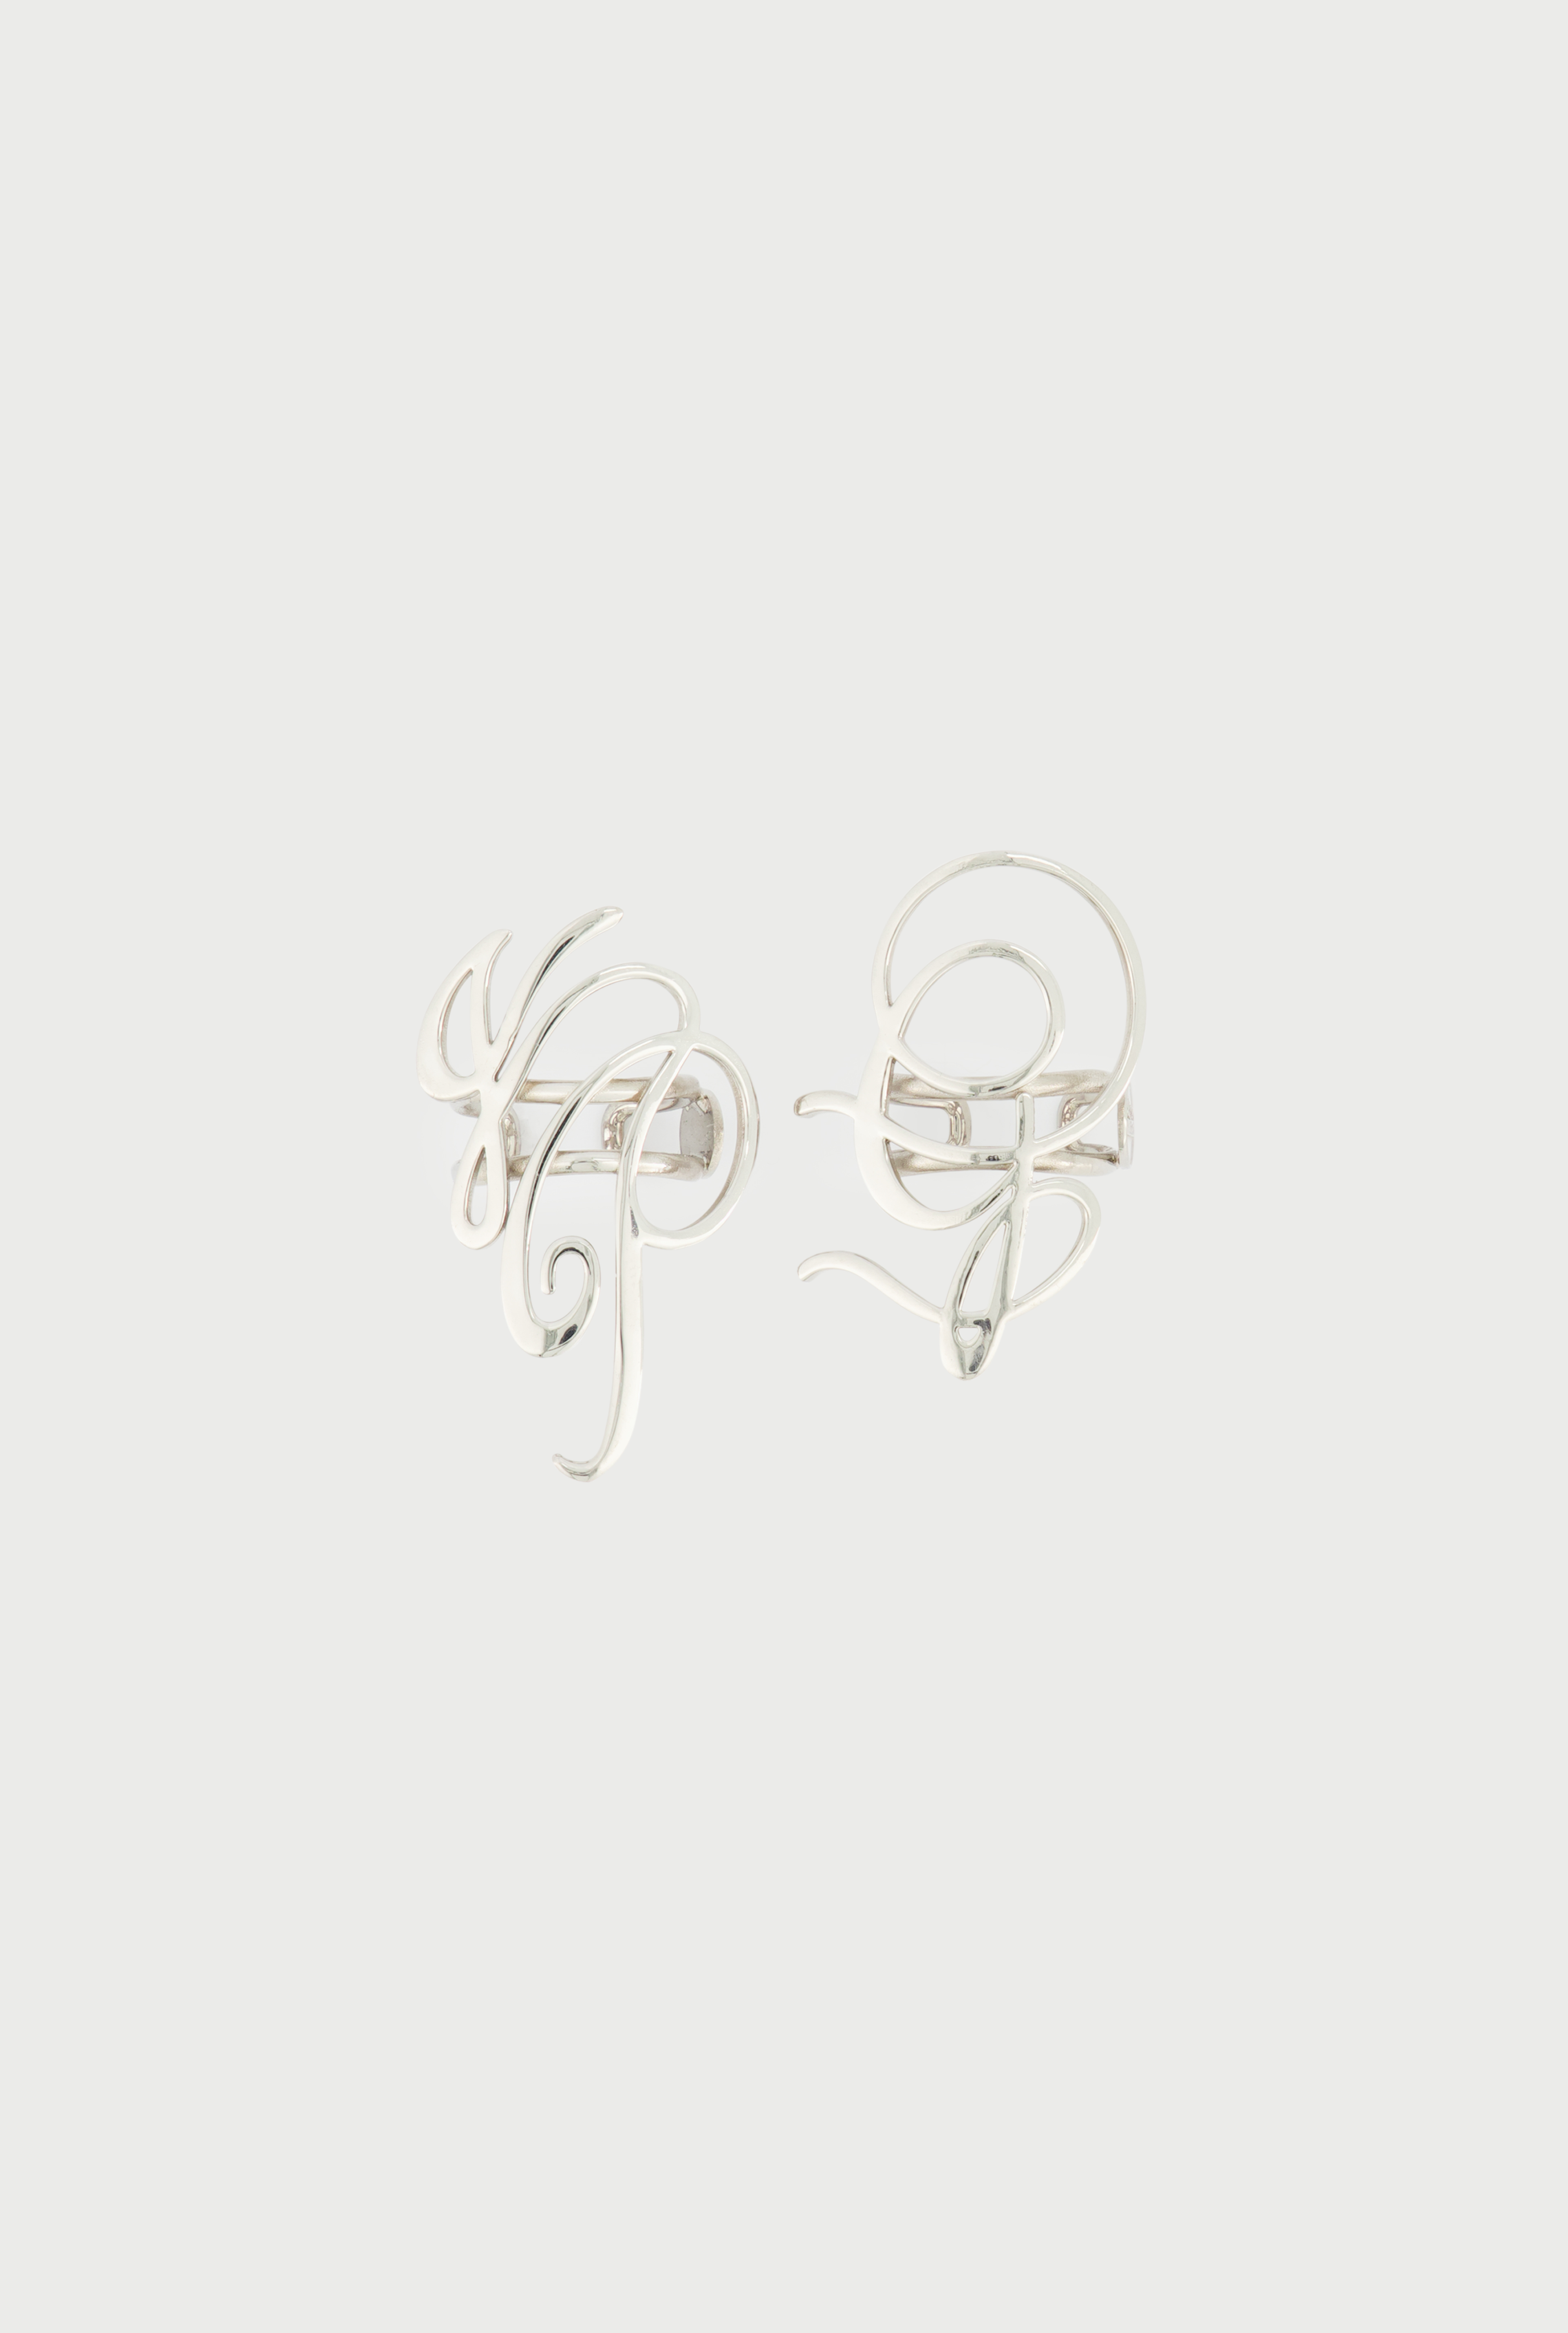 Jean Paul Gaultier - Jewelry | Jean Paul Gaultier